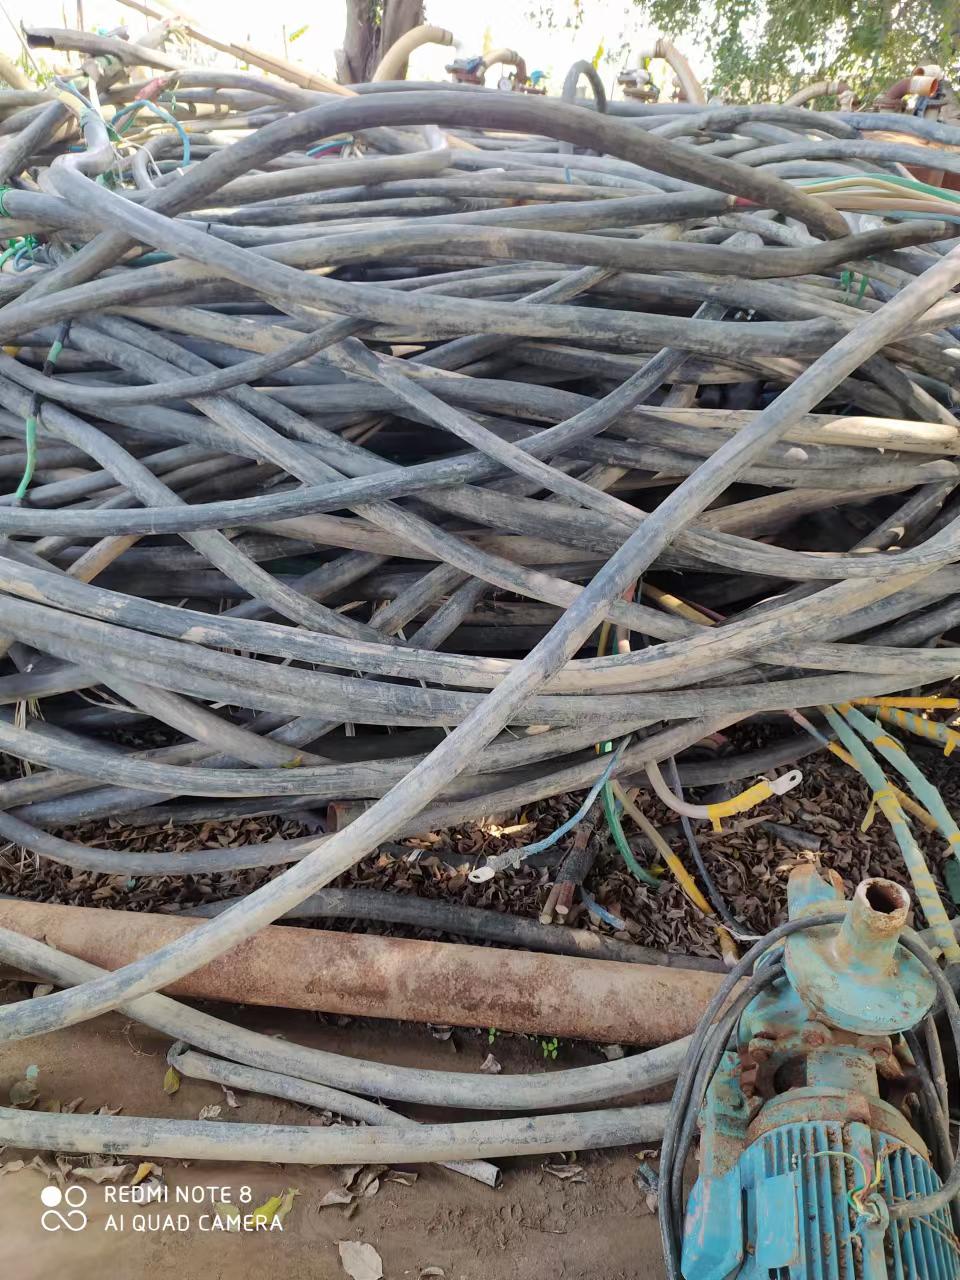 增城 不锈钢回收  旧电缆回收  金属回收报价